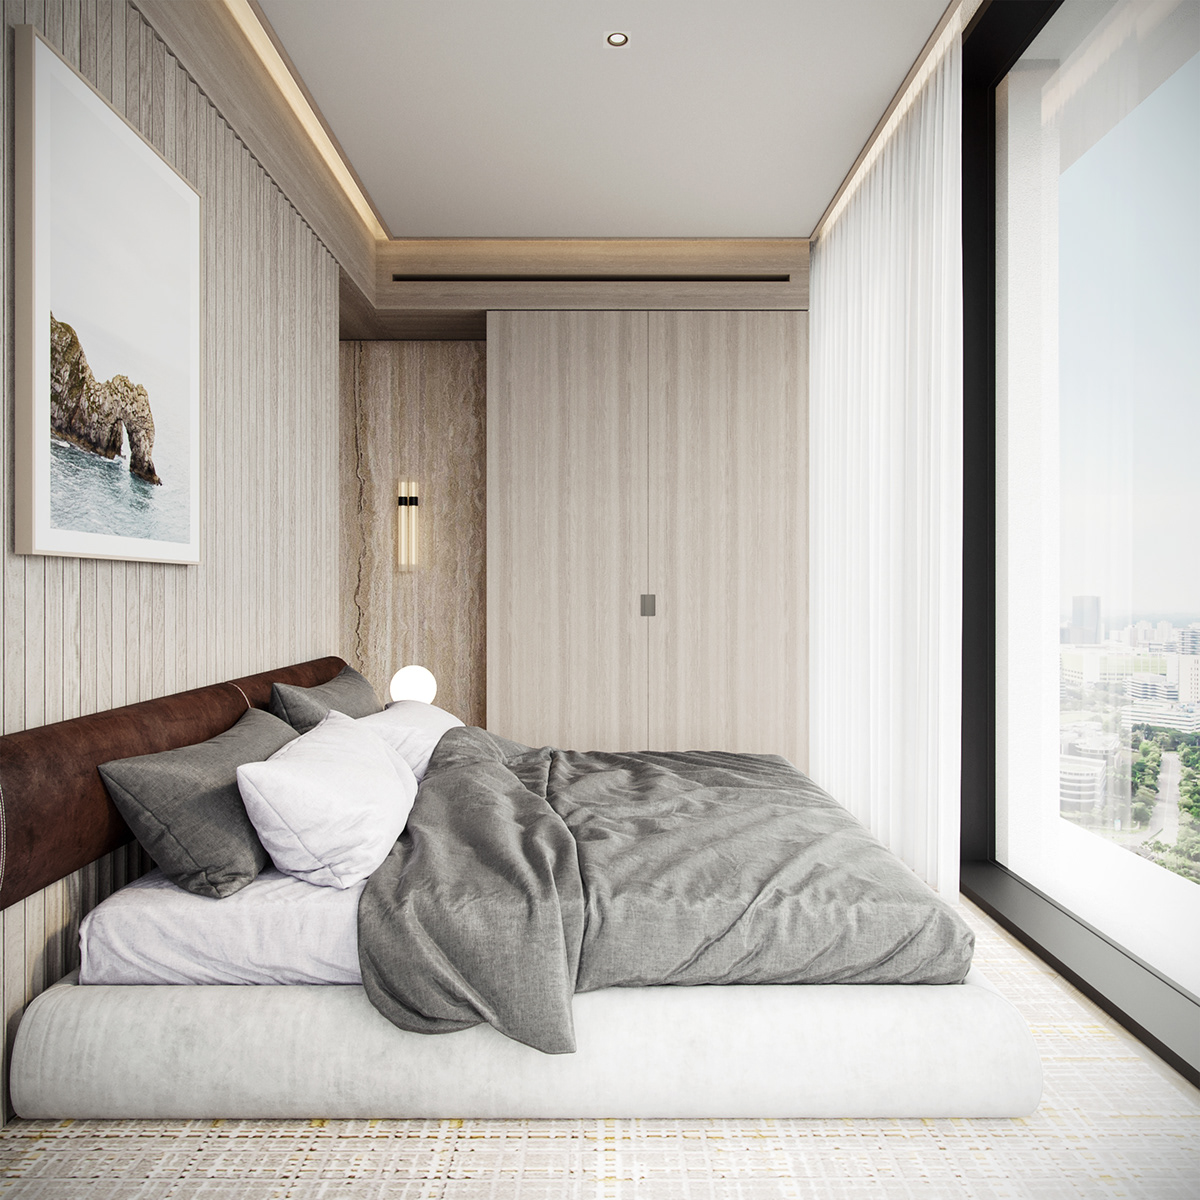 architecture development Interior interiordesign luxury minimalist residential simple 932designs singapore